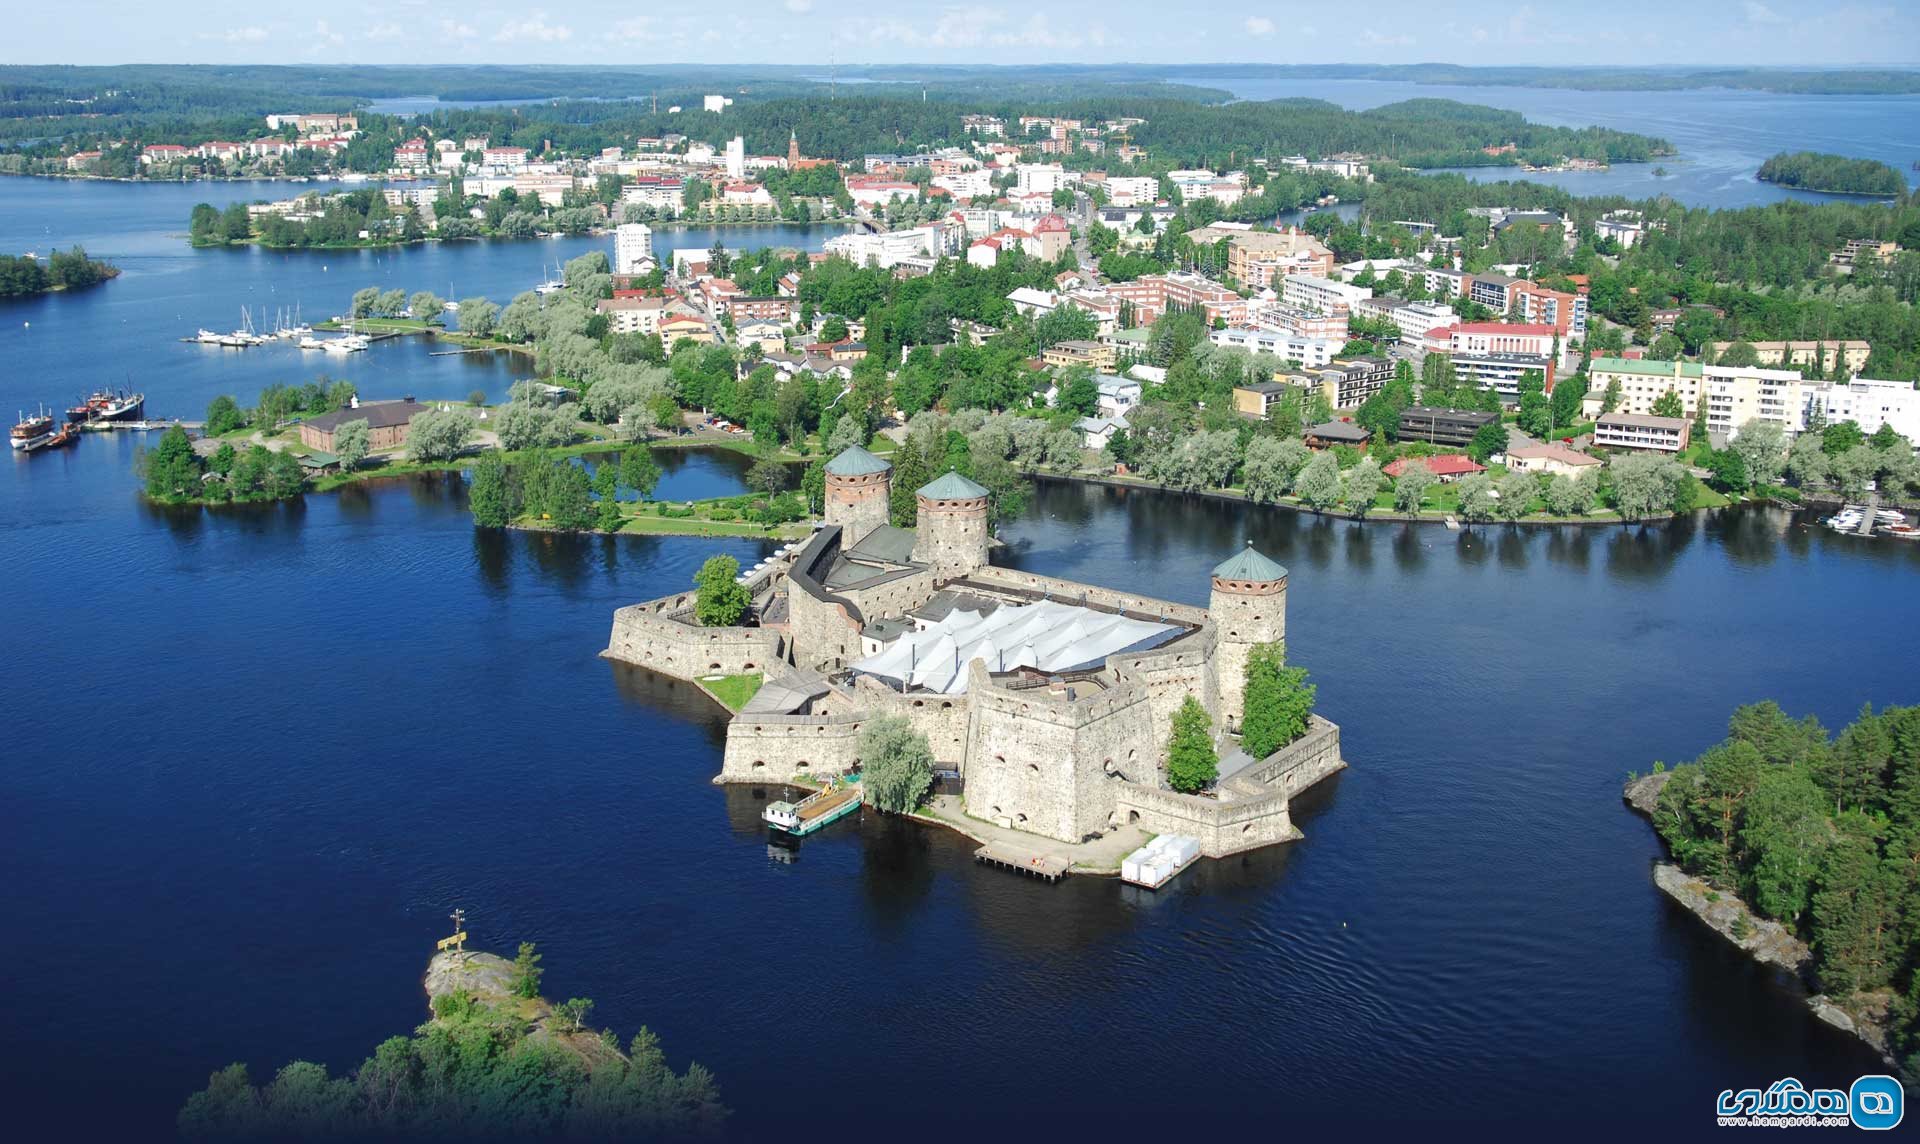 شهر ساوونلاینا (Savonlinna) و دریاچه سایما (Saimaa)